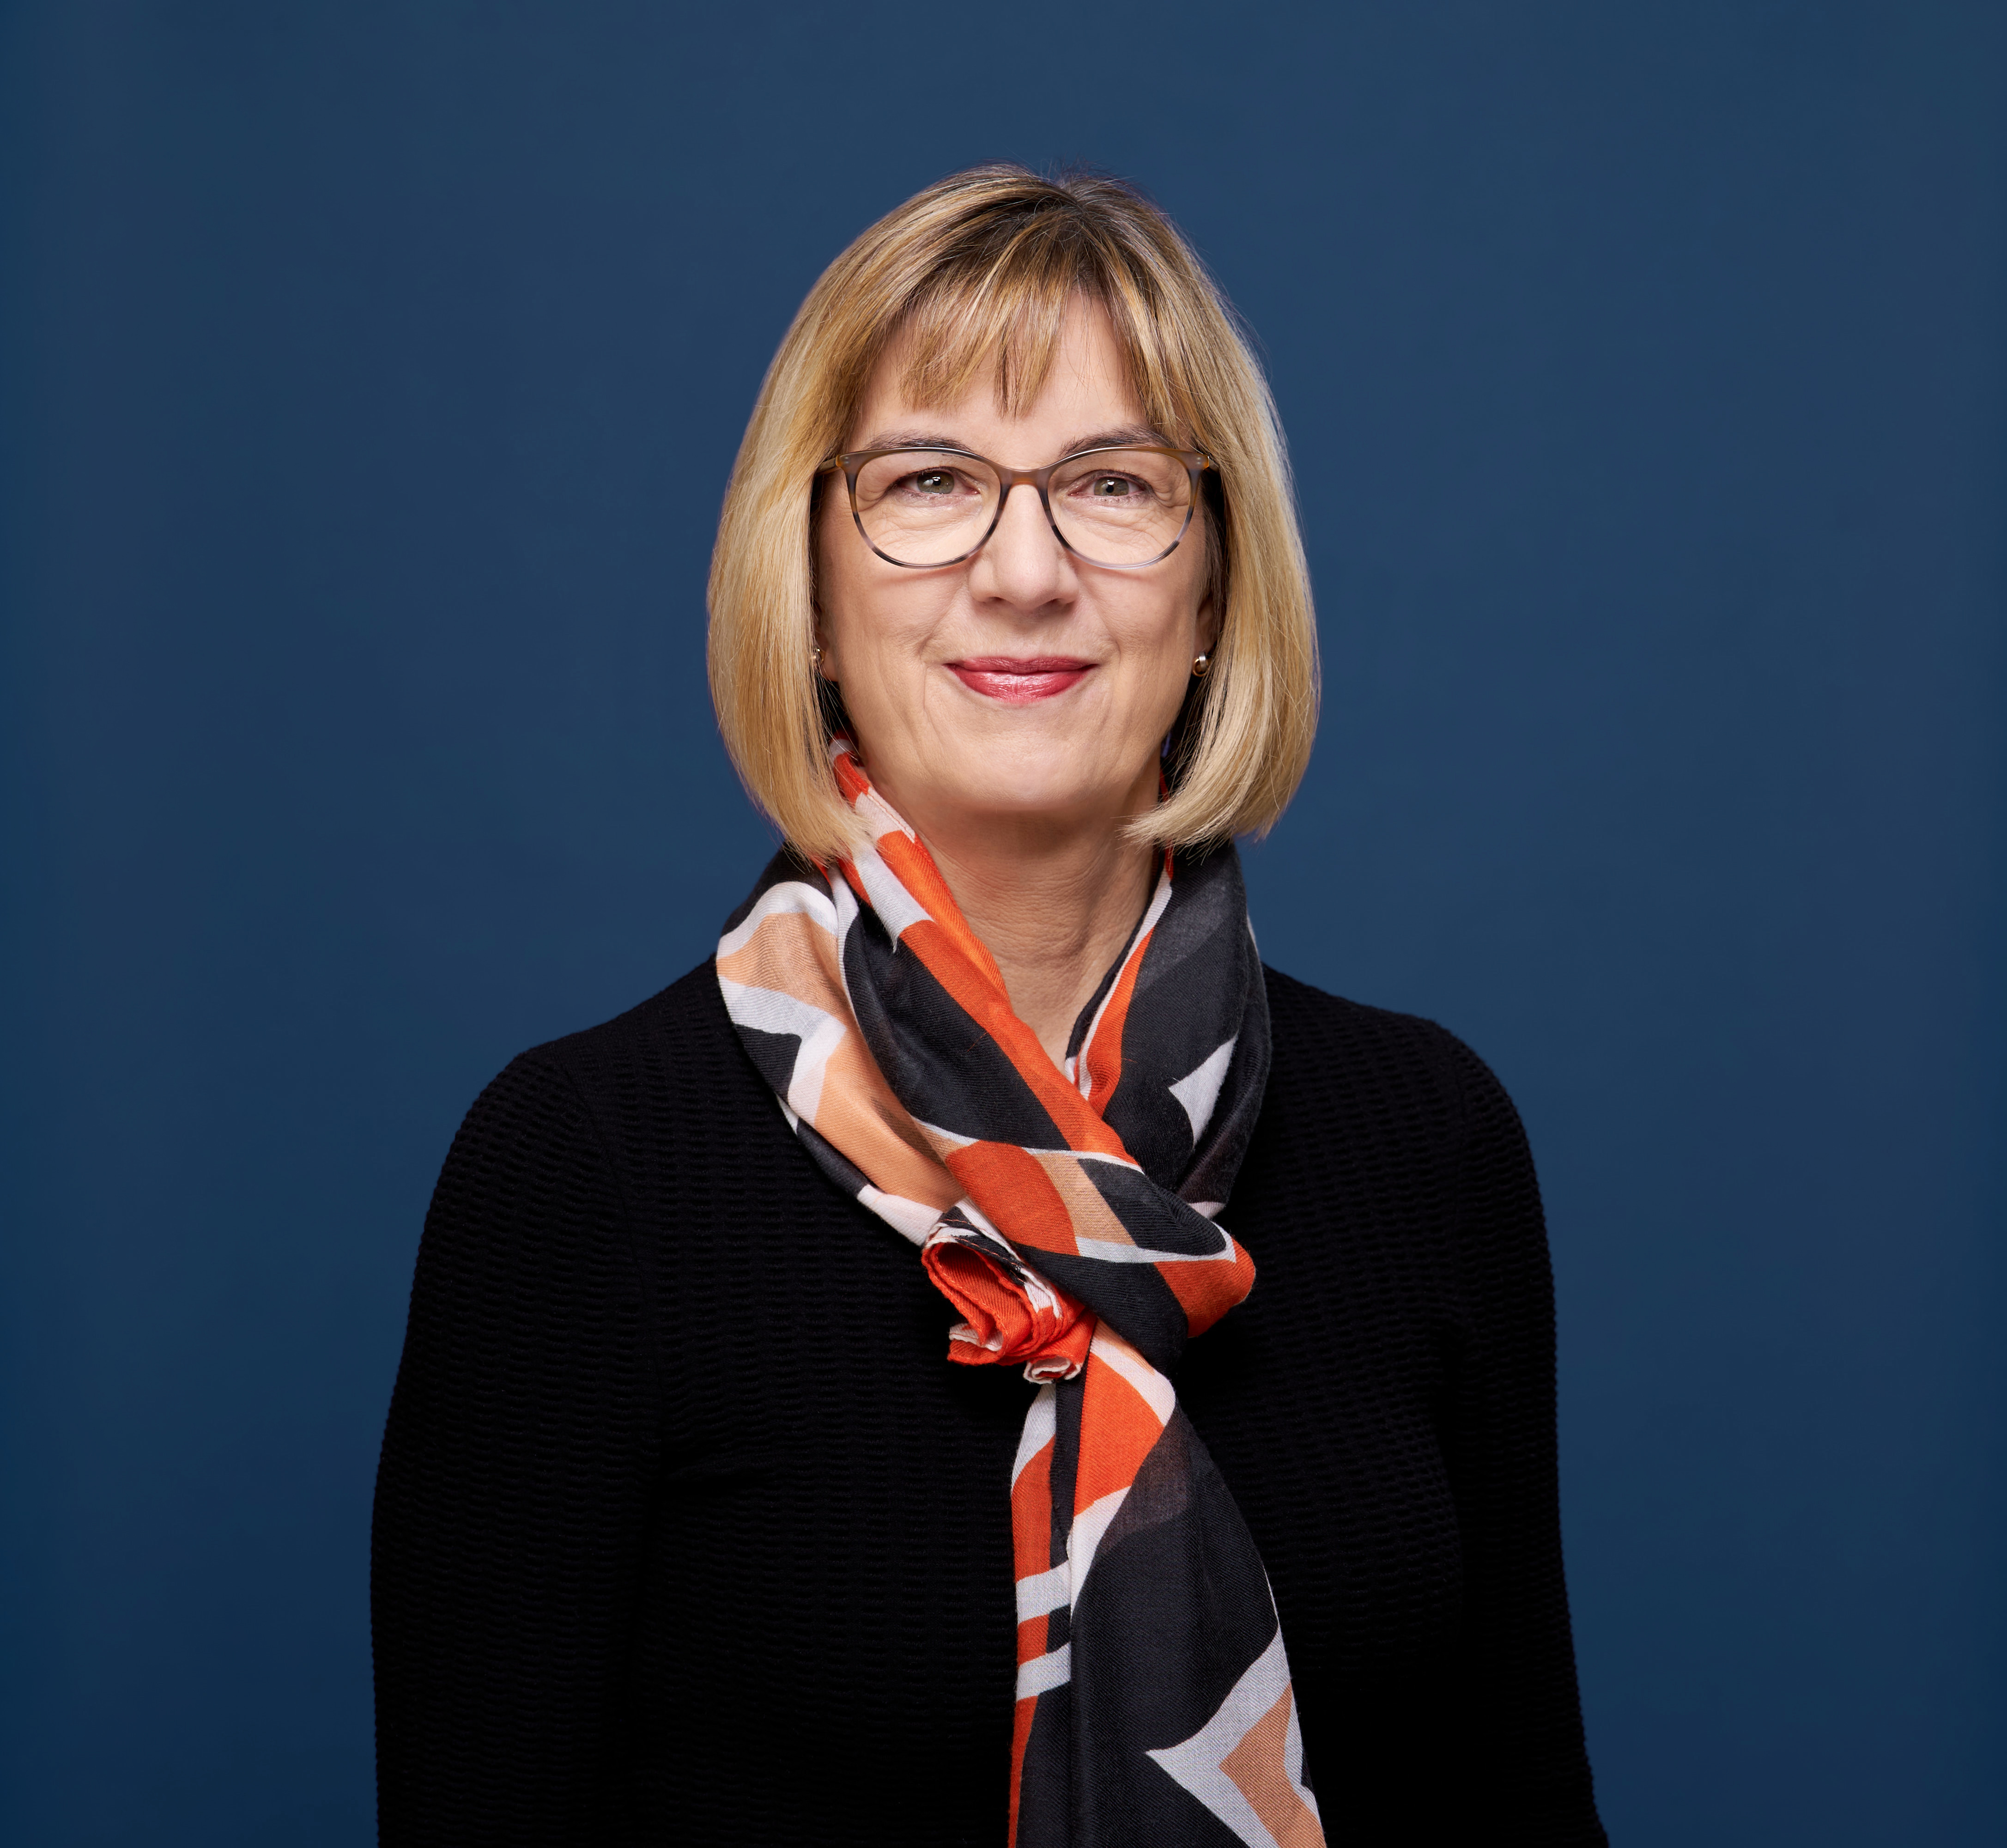 Dr. Susanne Johna, 1. Vorsitzende des Marburger Bundes